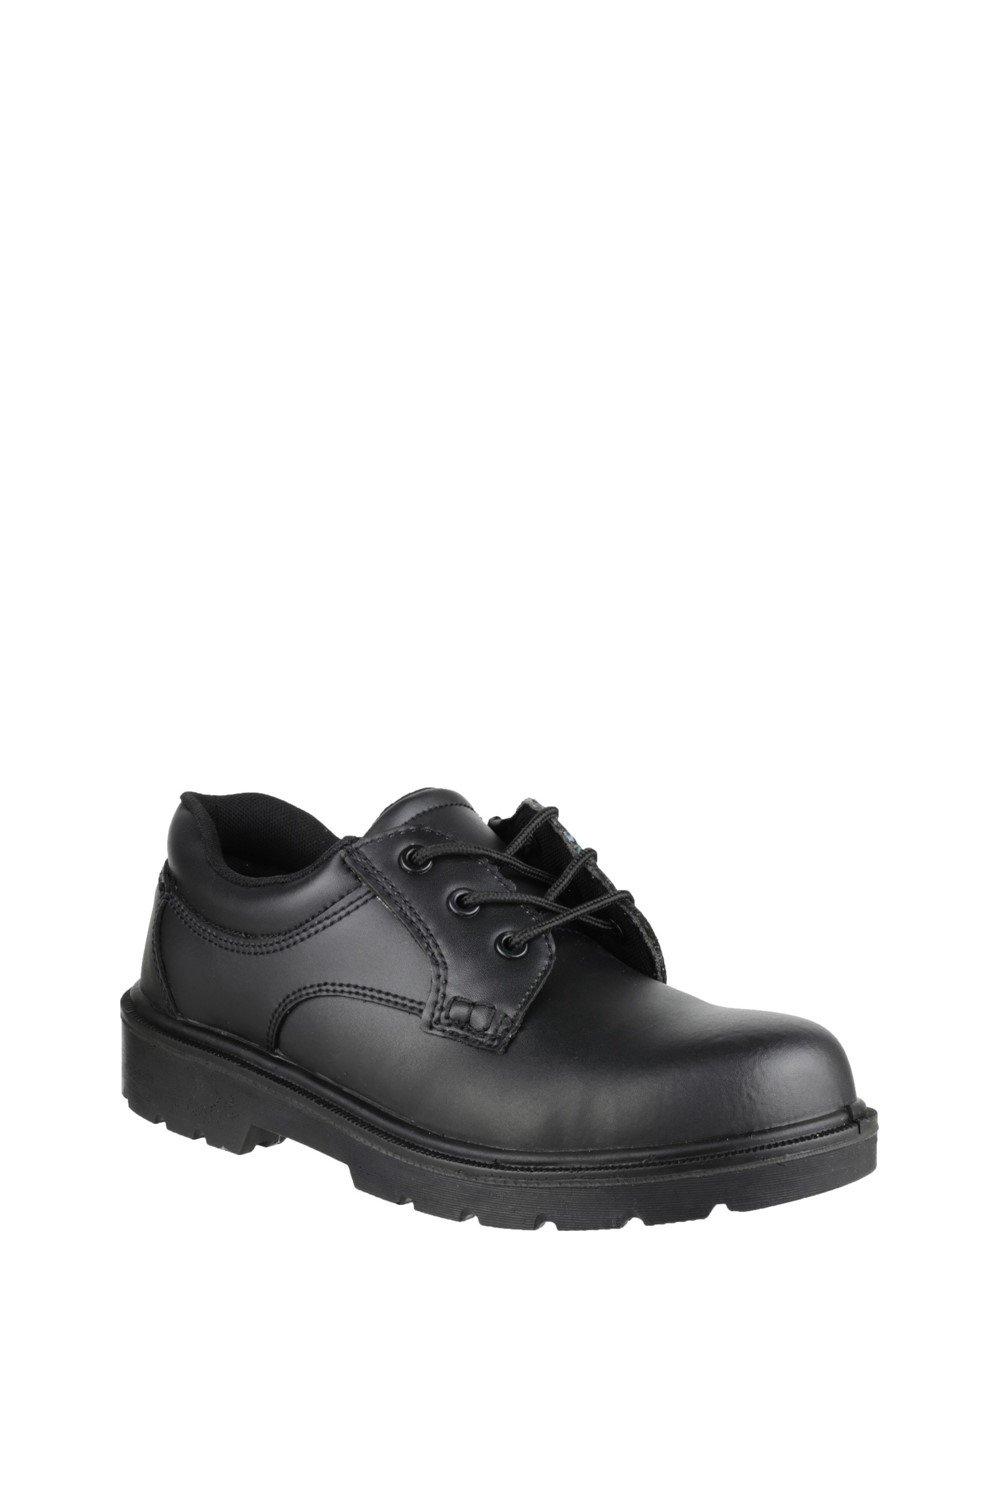 Защитная обувь 'FS38C' Amblers Safety, черный мужская женская рабочая защитная обувь с кевларовой межподошвой красный